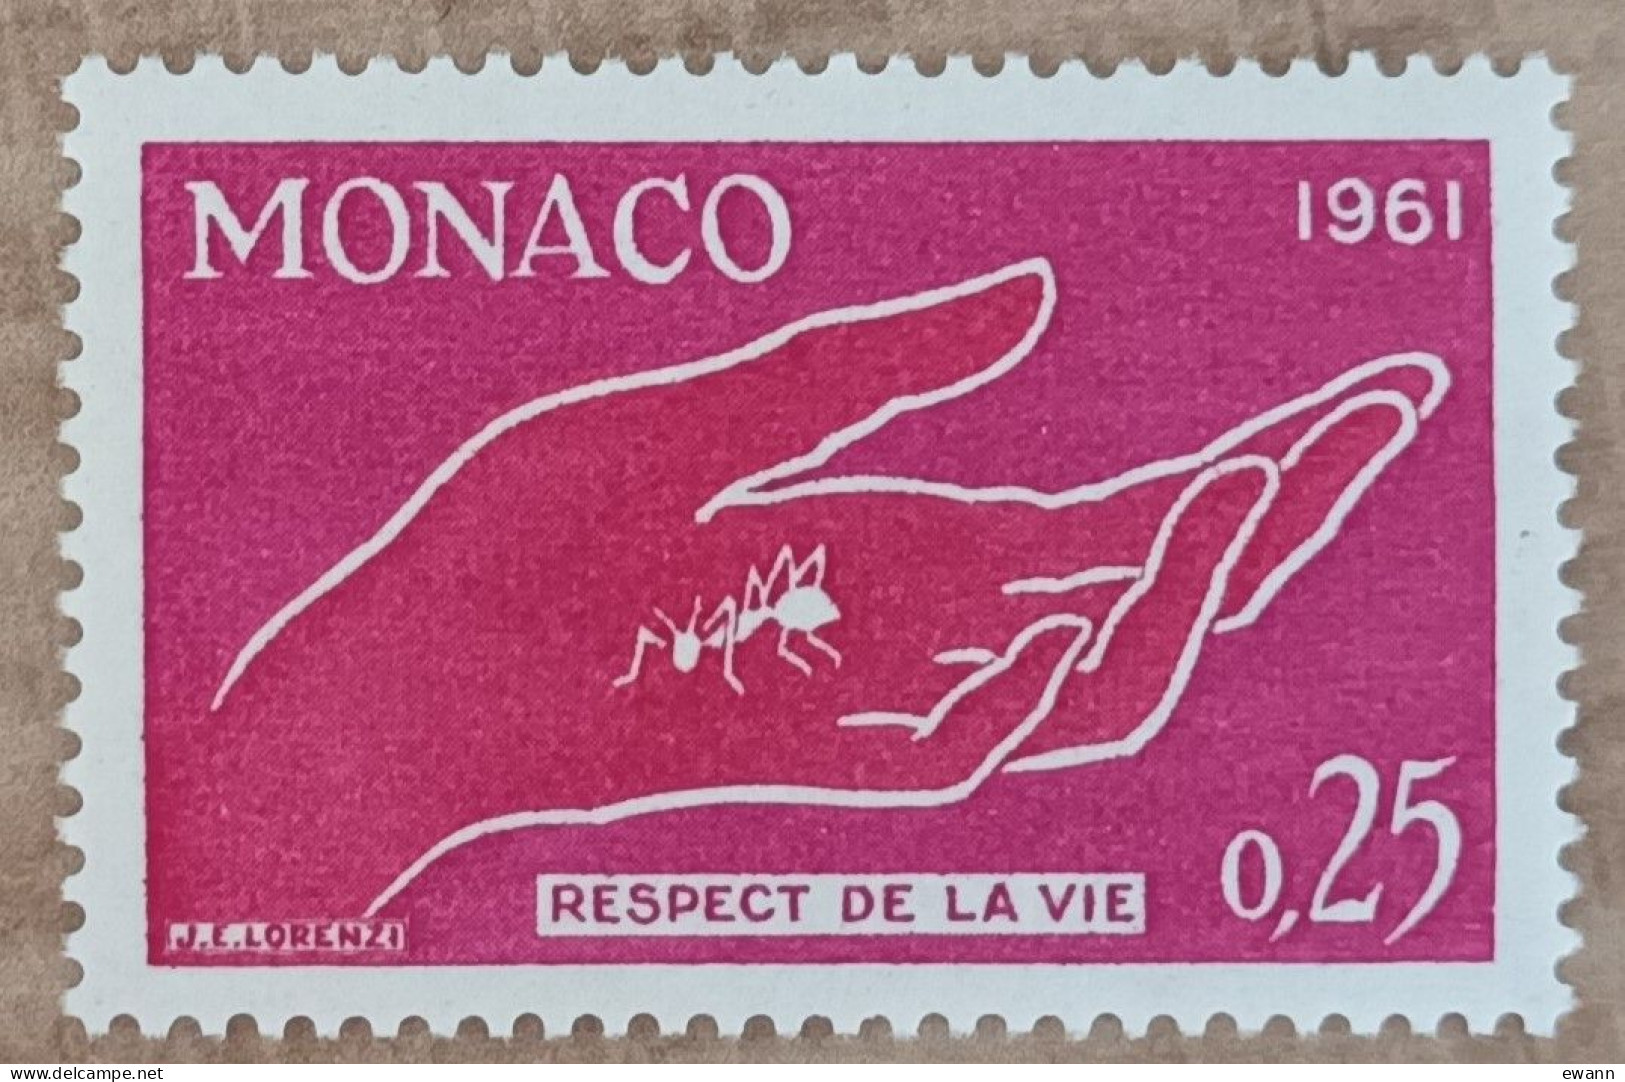 Monaco - YT N°554 - Campagne Pour Le Respect De La Vie Animale - 1961 - Neuf - Unused Stamps